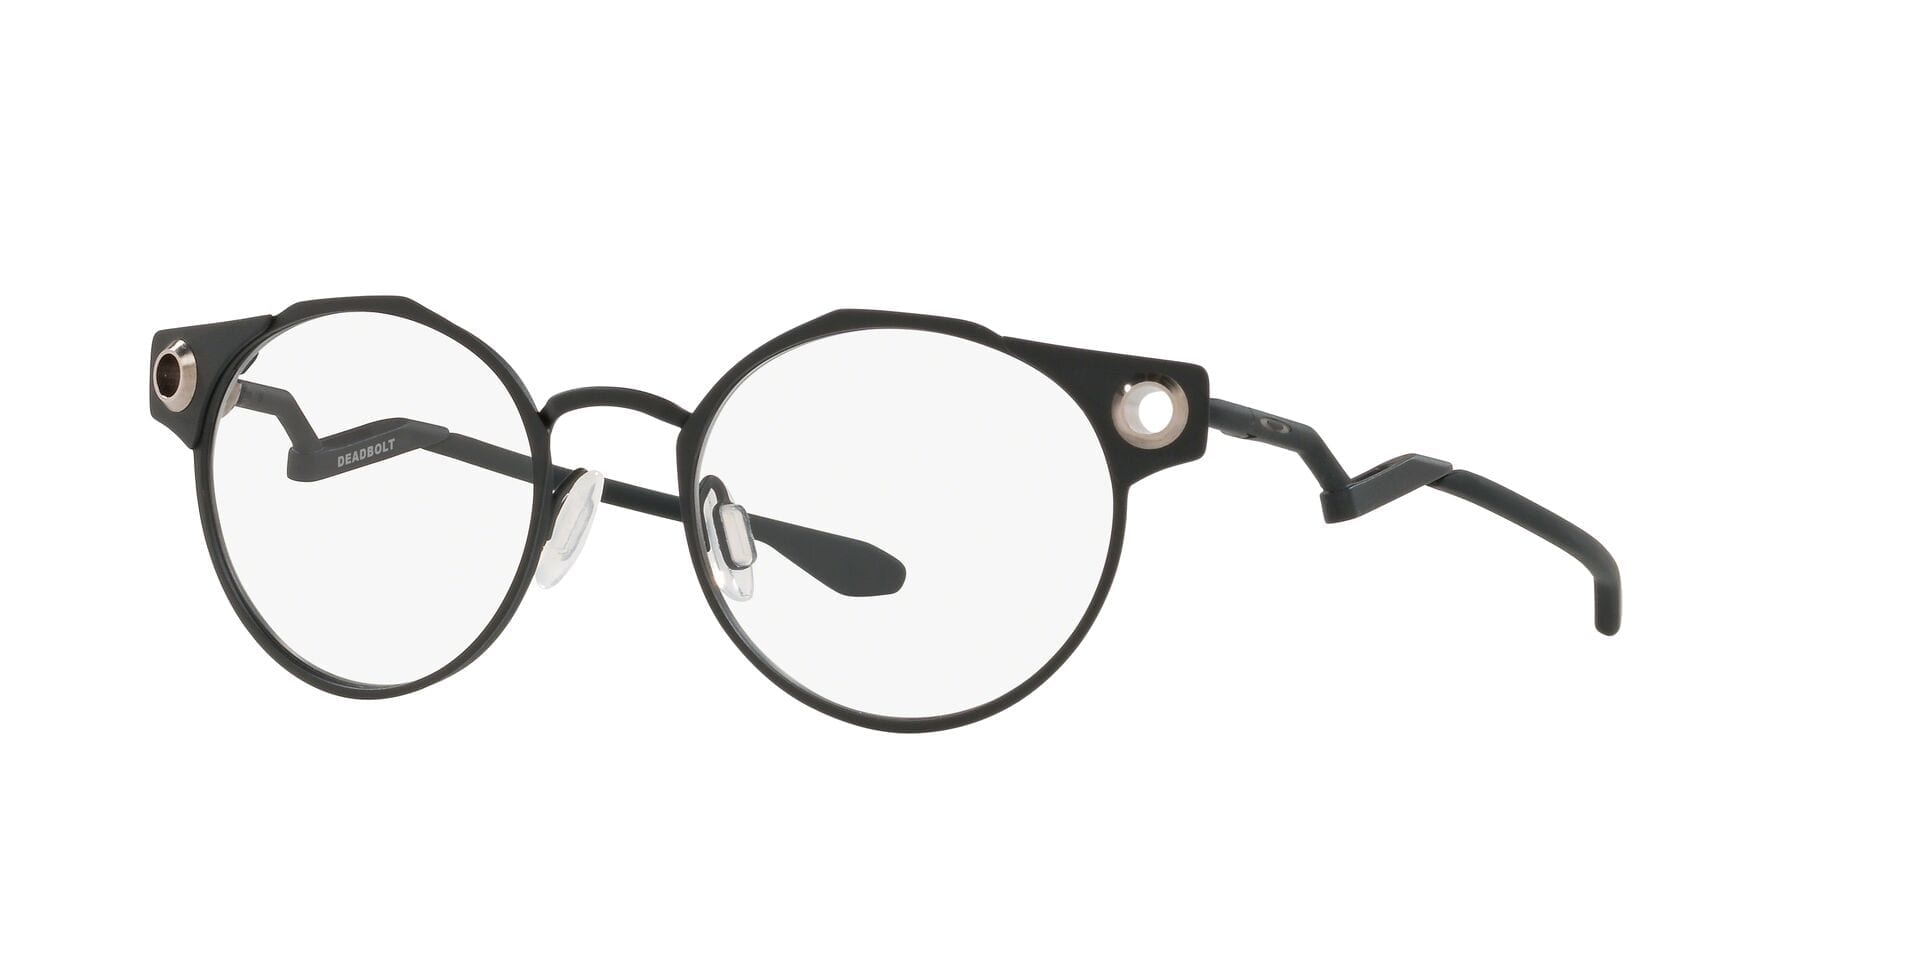 mens oakley glasses